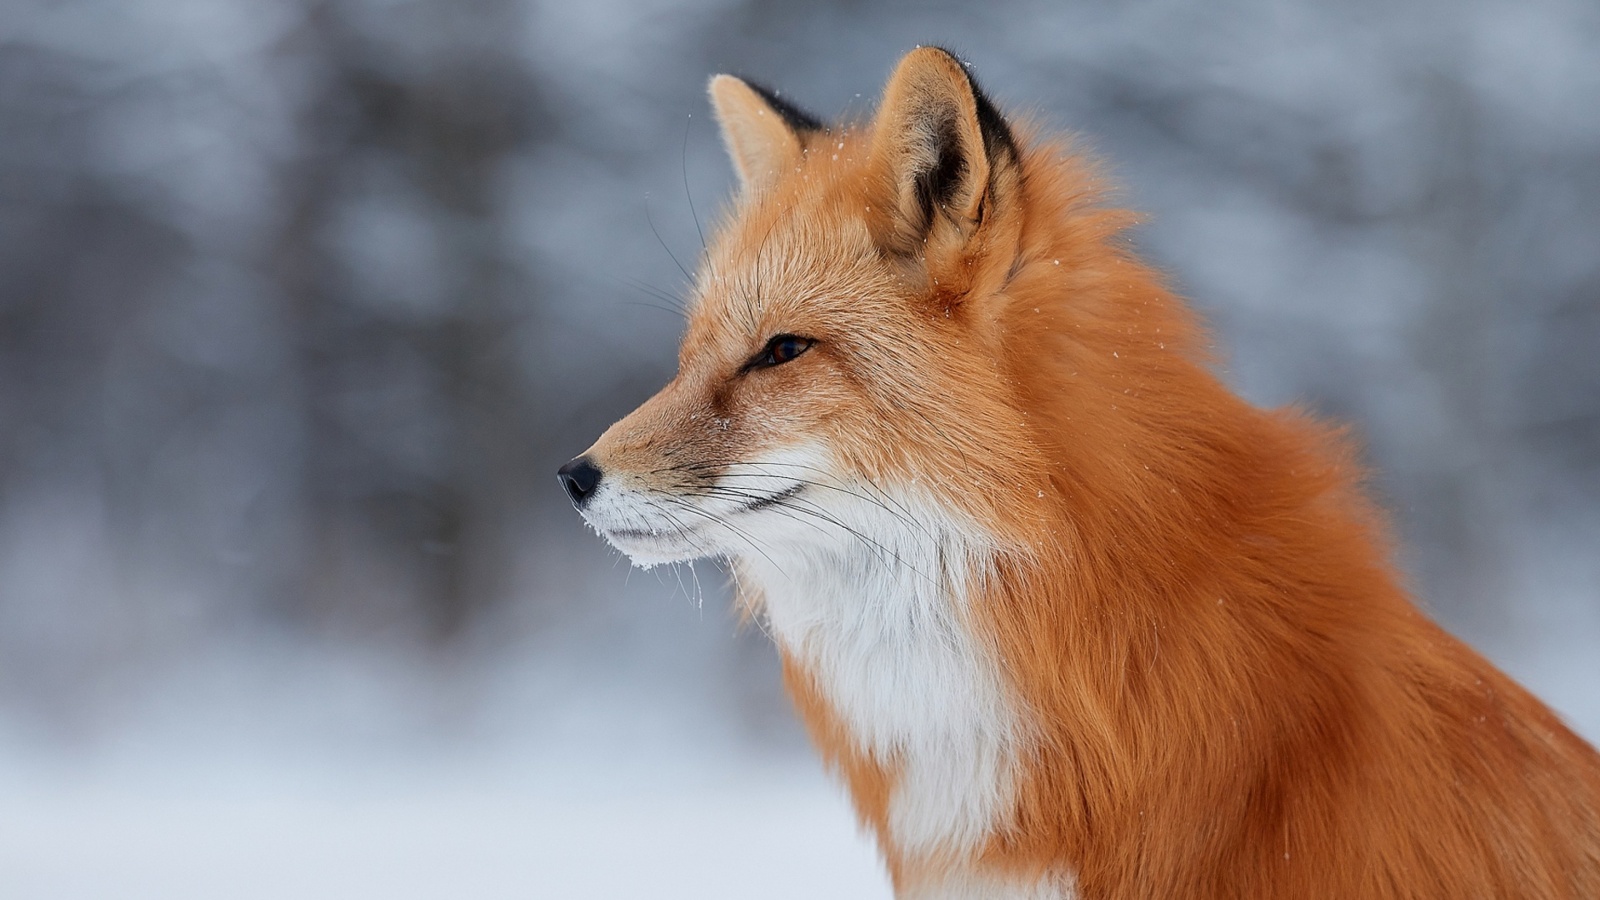 Обои Fox wildlife photography 1600x900